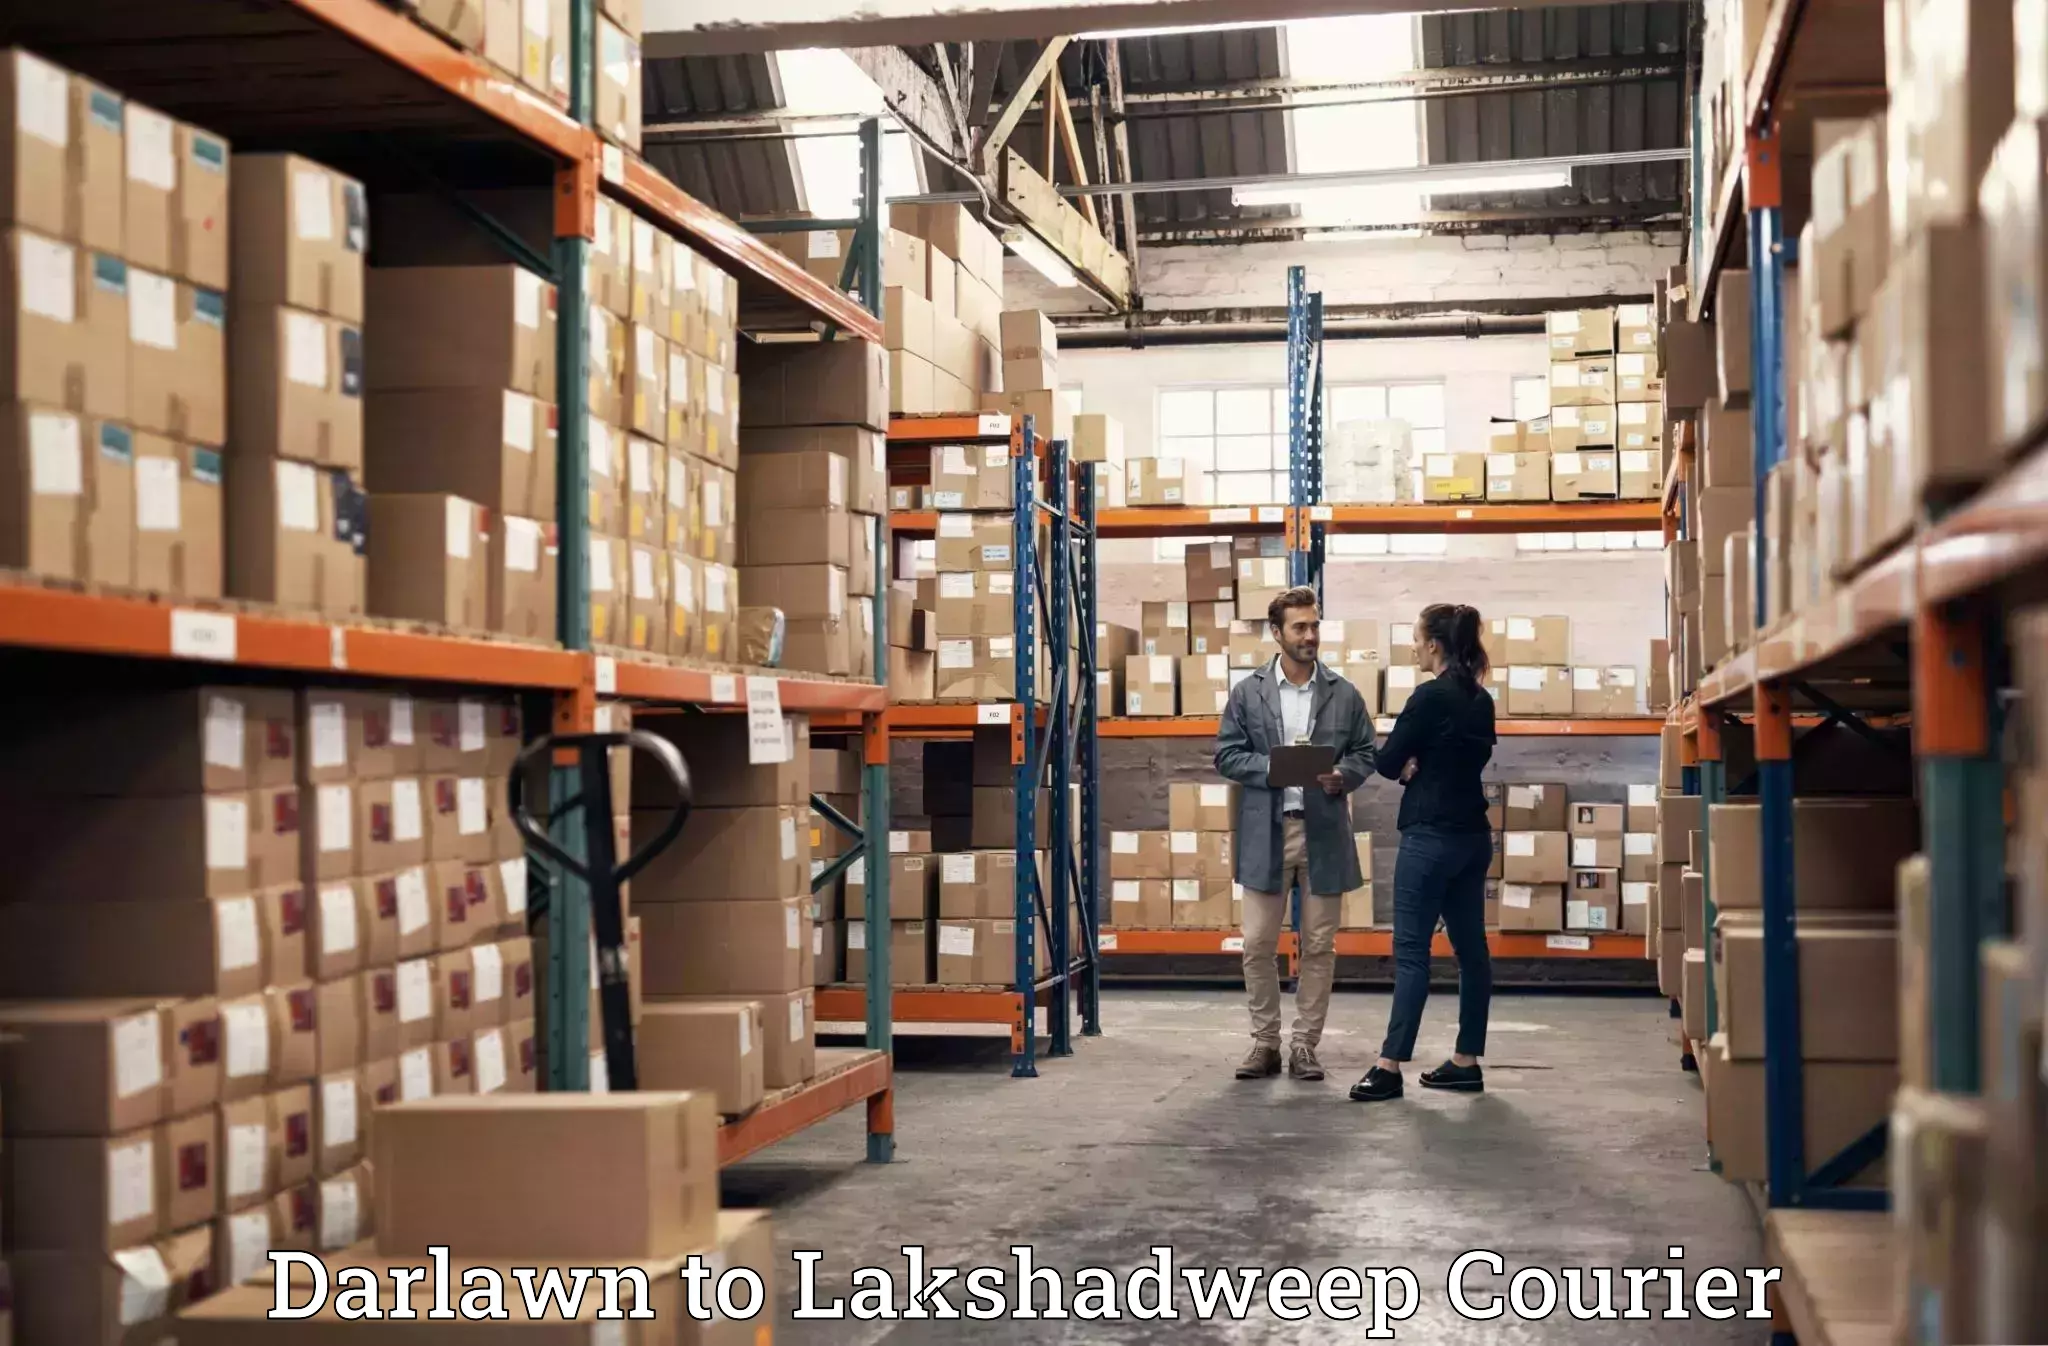 Furniture transport experts Darlawn to Lakshadweep